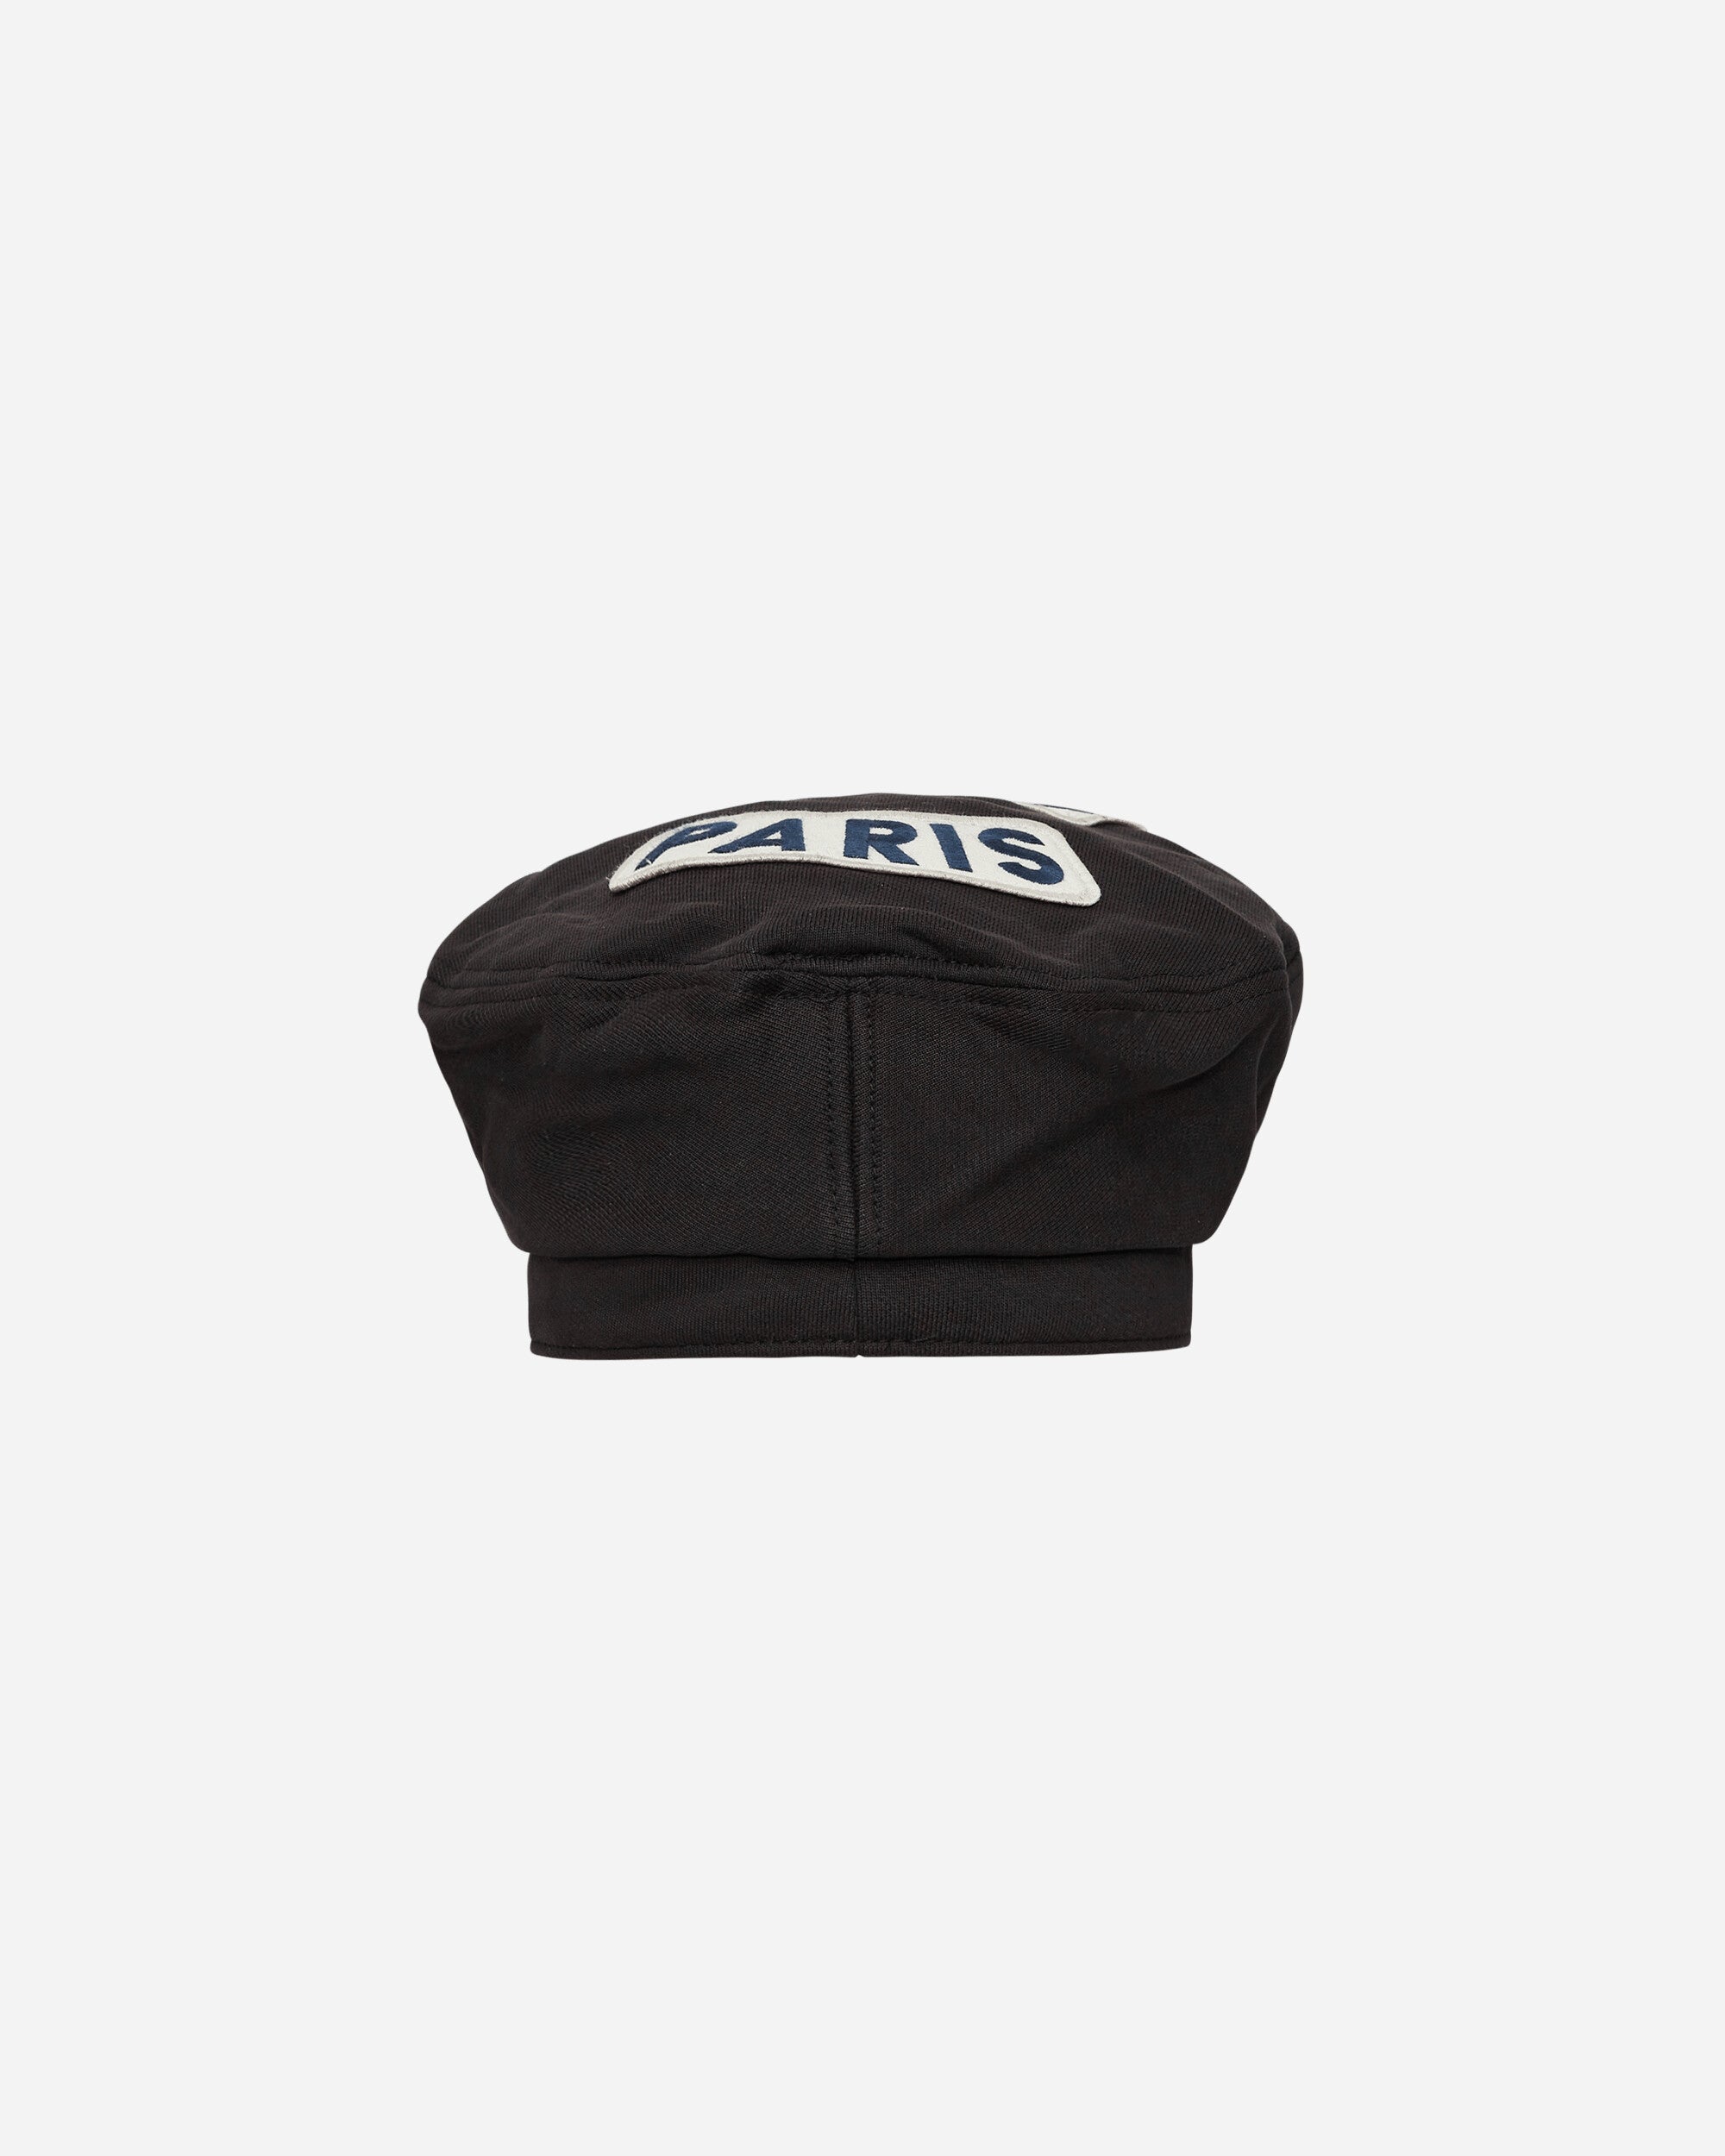 Kenzo Paris Beret Black Hats Caps FD55AC872F40 99